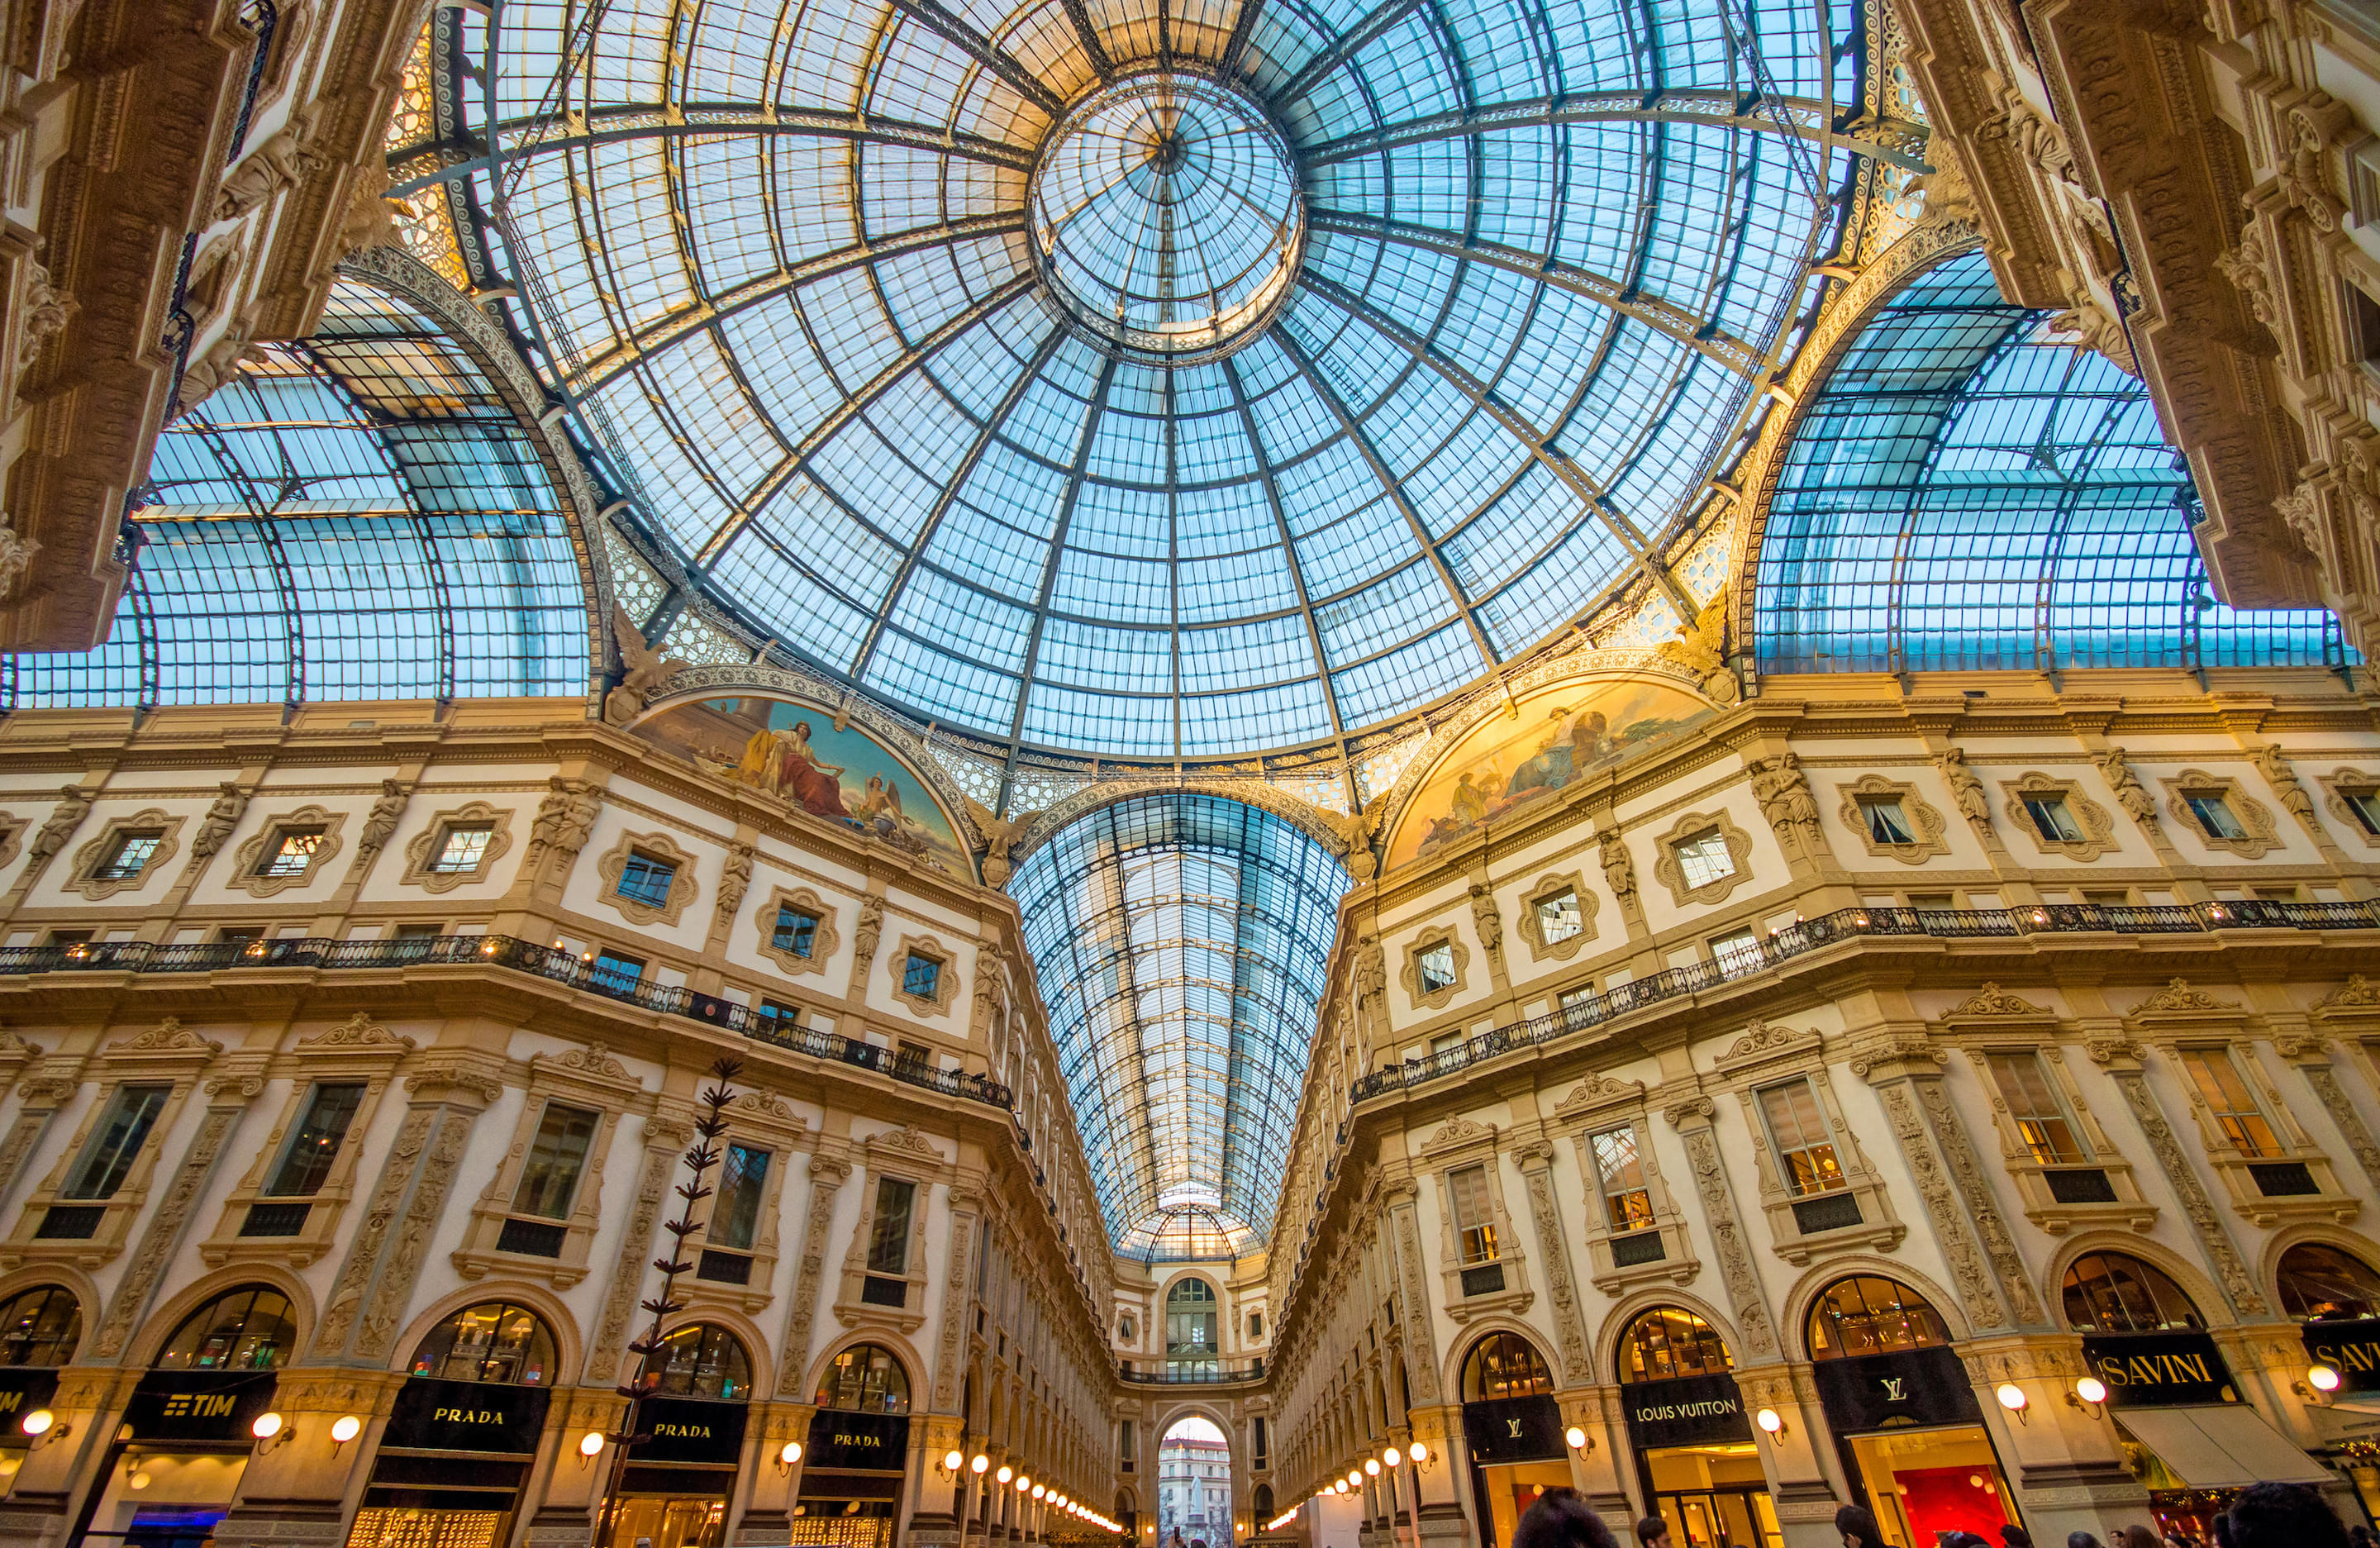 Galleria Vittorio Emanuele Ii Overview